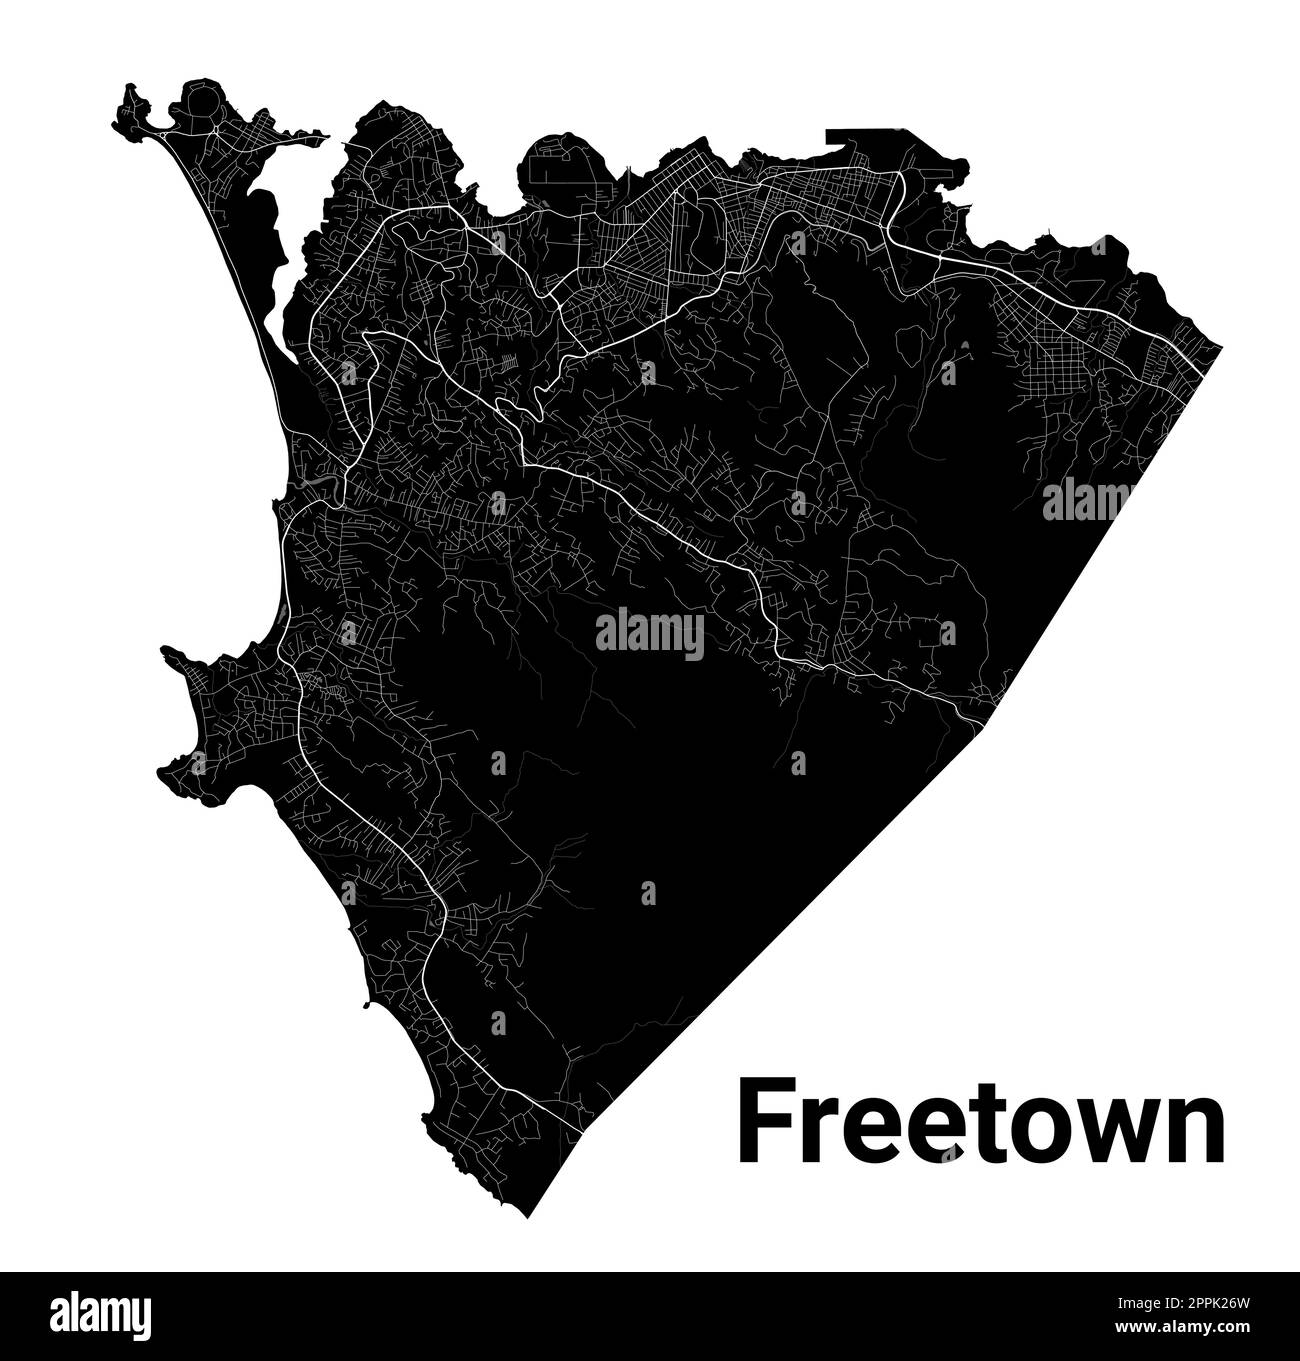 Freetown, Karte von Sierra Leone. Detaillierte schwarze Karte der Stadtverwaltung von Freetown. Stadtbild-Poster mit Blick auf die Metropolitane Aria. Schwarzes Land mit weißem Ro Stock Vektor